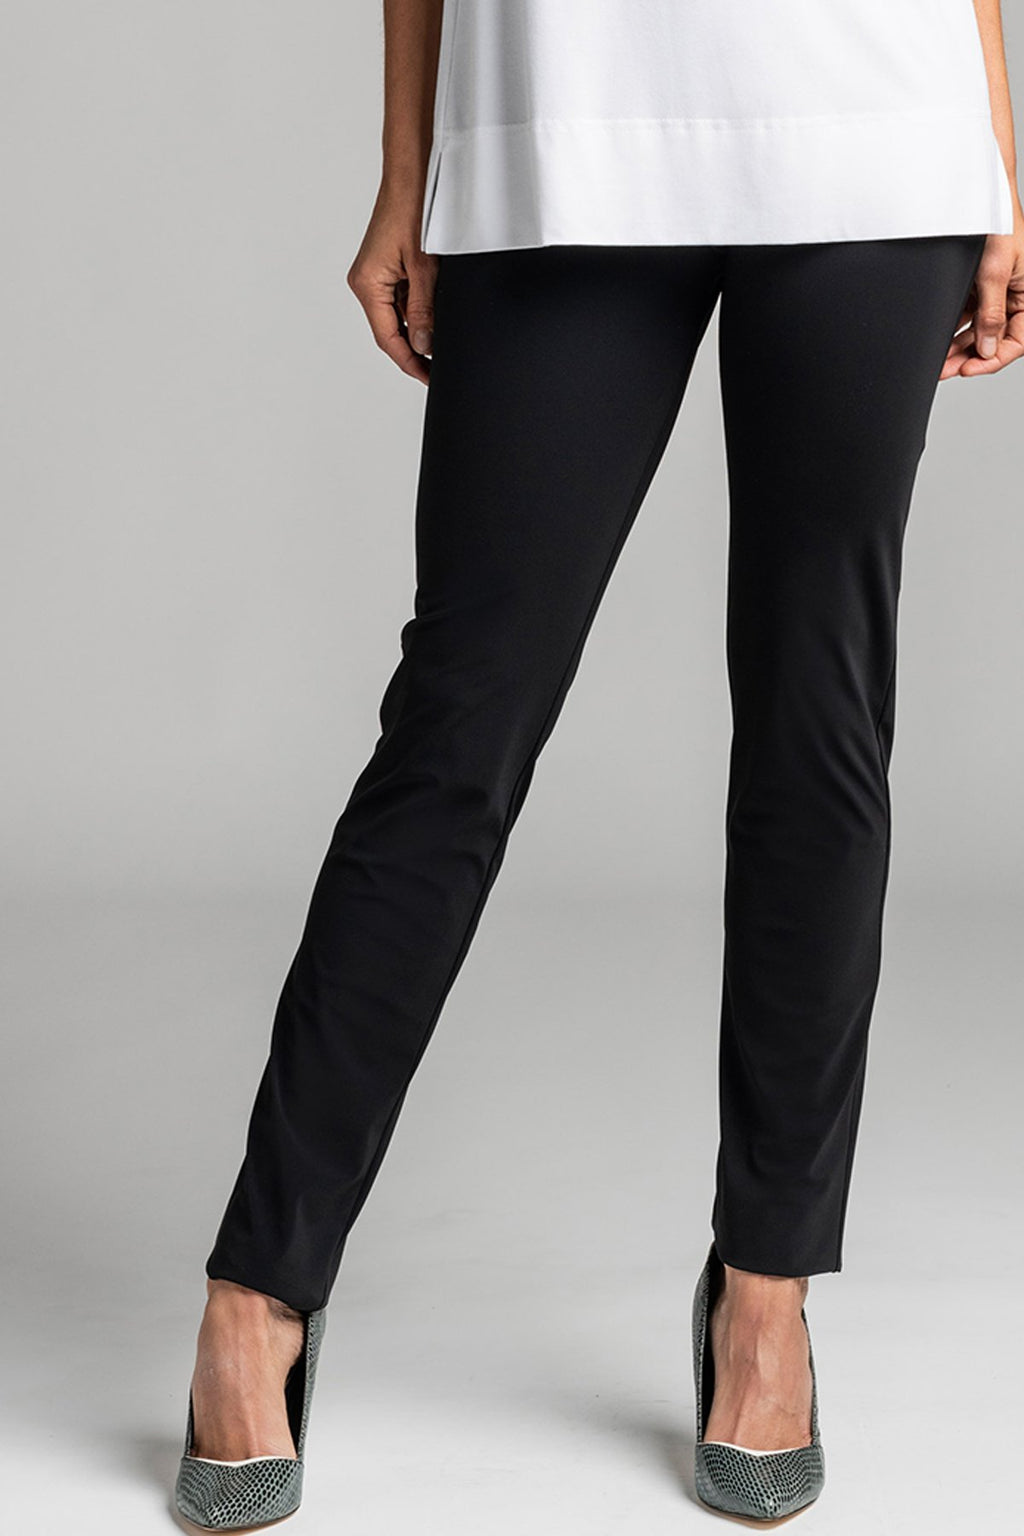 J Jill Black Wearever Smooth-Fit Slim-Leg Pants Size Small Tall